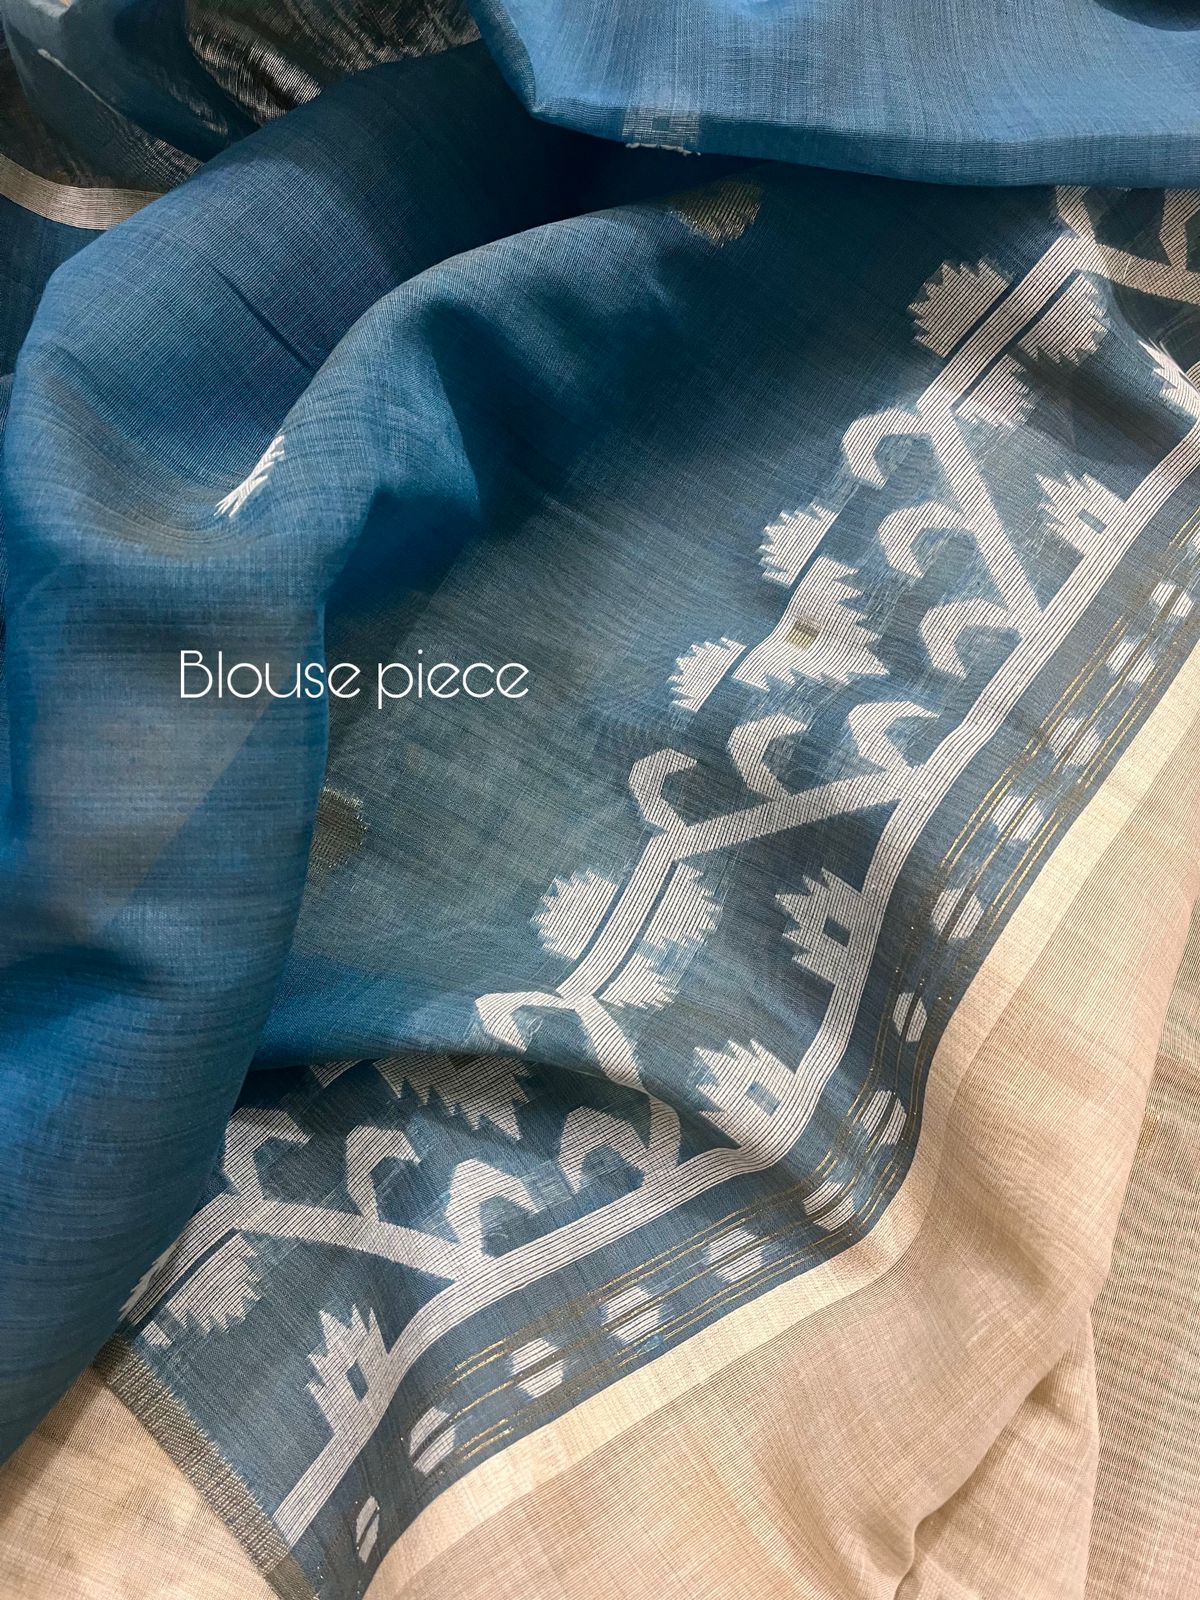 সাদা এবং নীল সুতির হ্যান্ডলুম জামদানি শাড়ির সাথে হালকা বিস্কুট